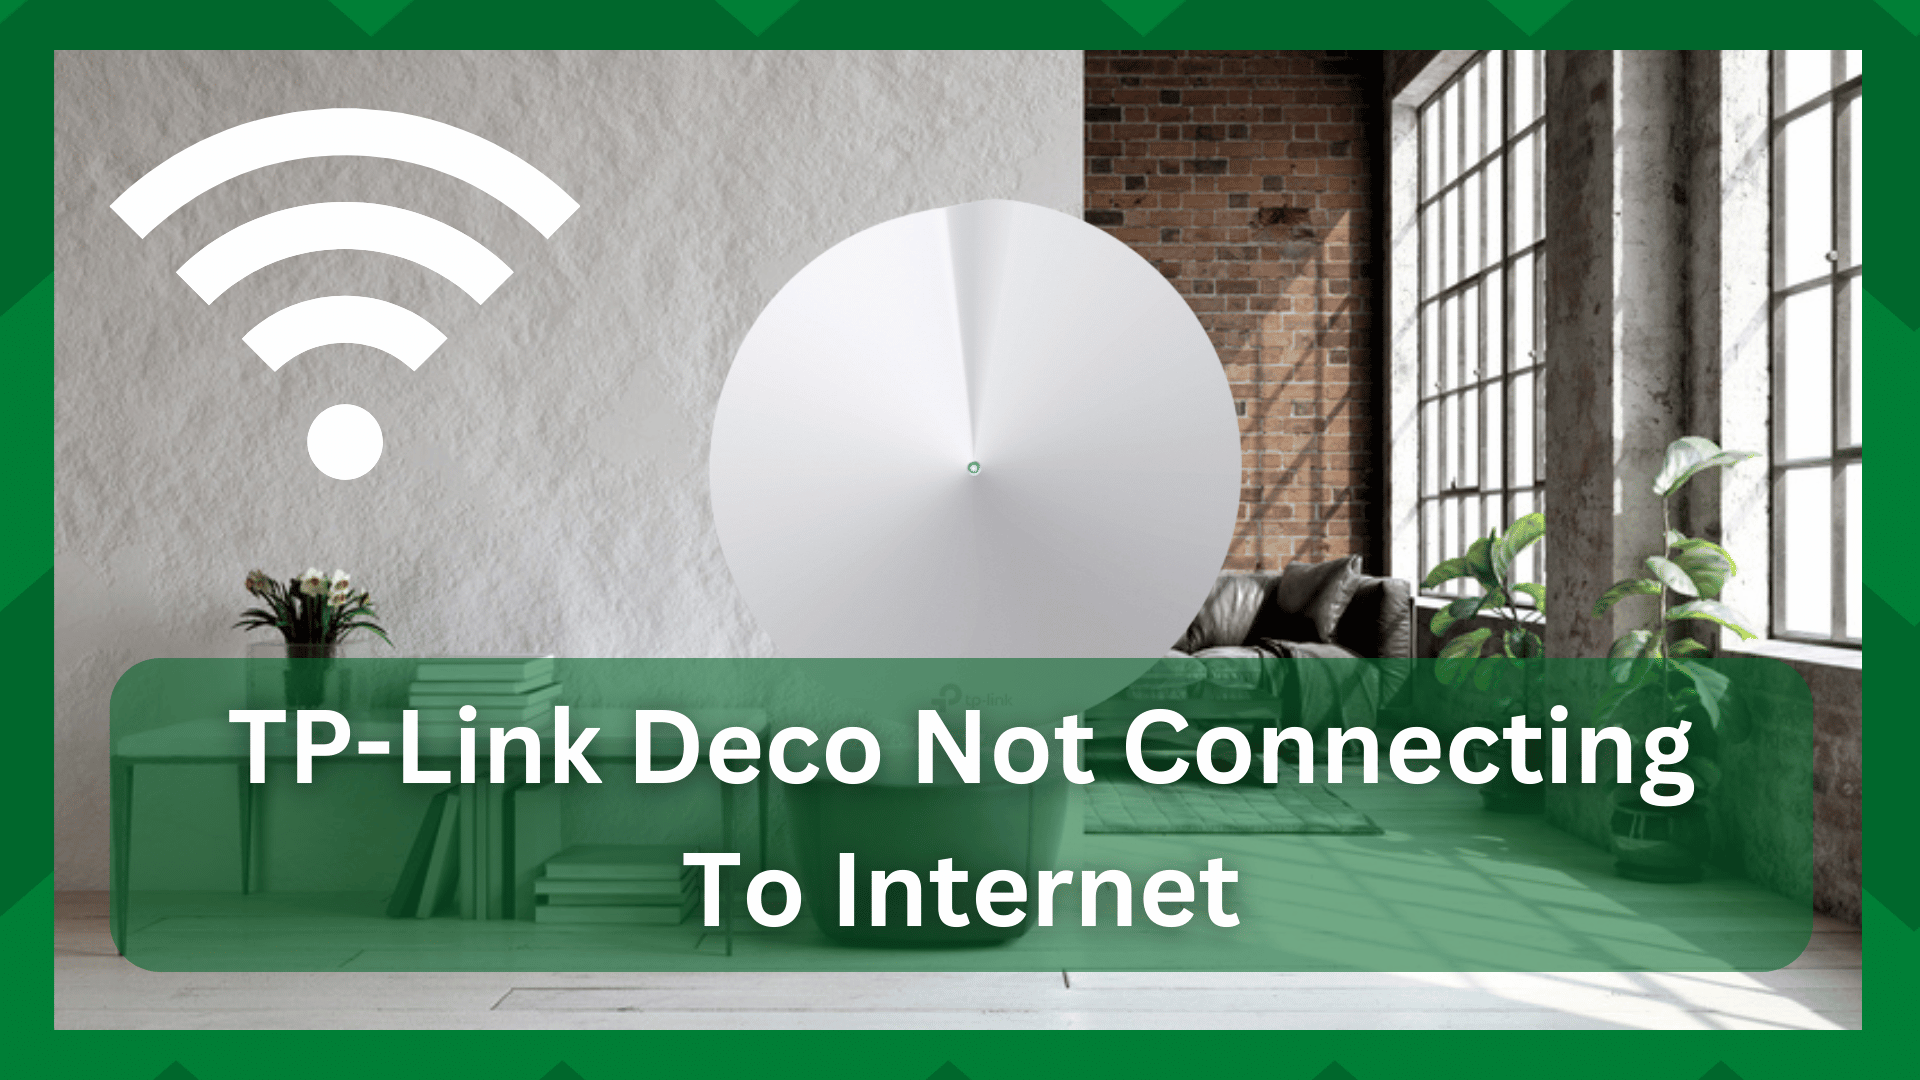 TP-Link Deco интернетэд холбогдохгүй байна (засах 6 алхам)